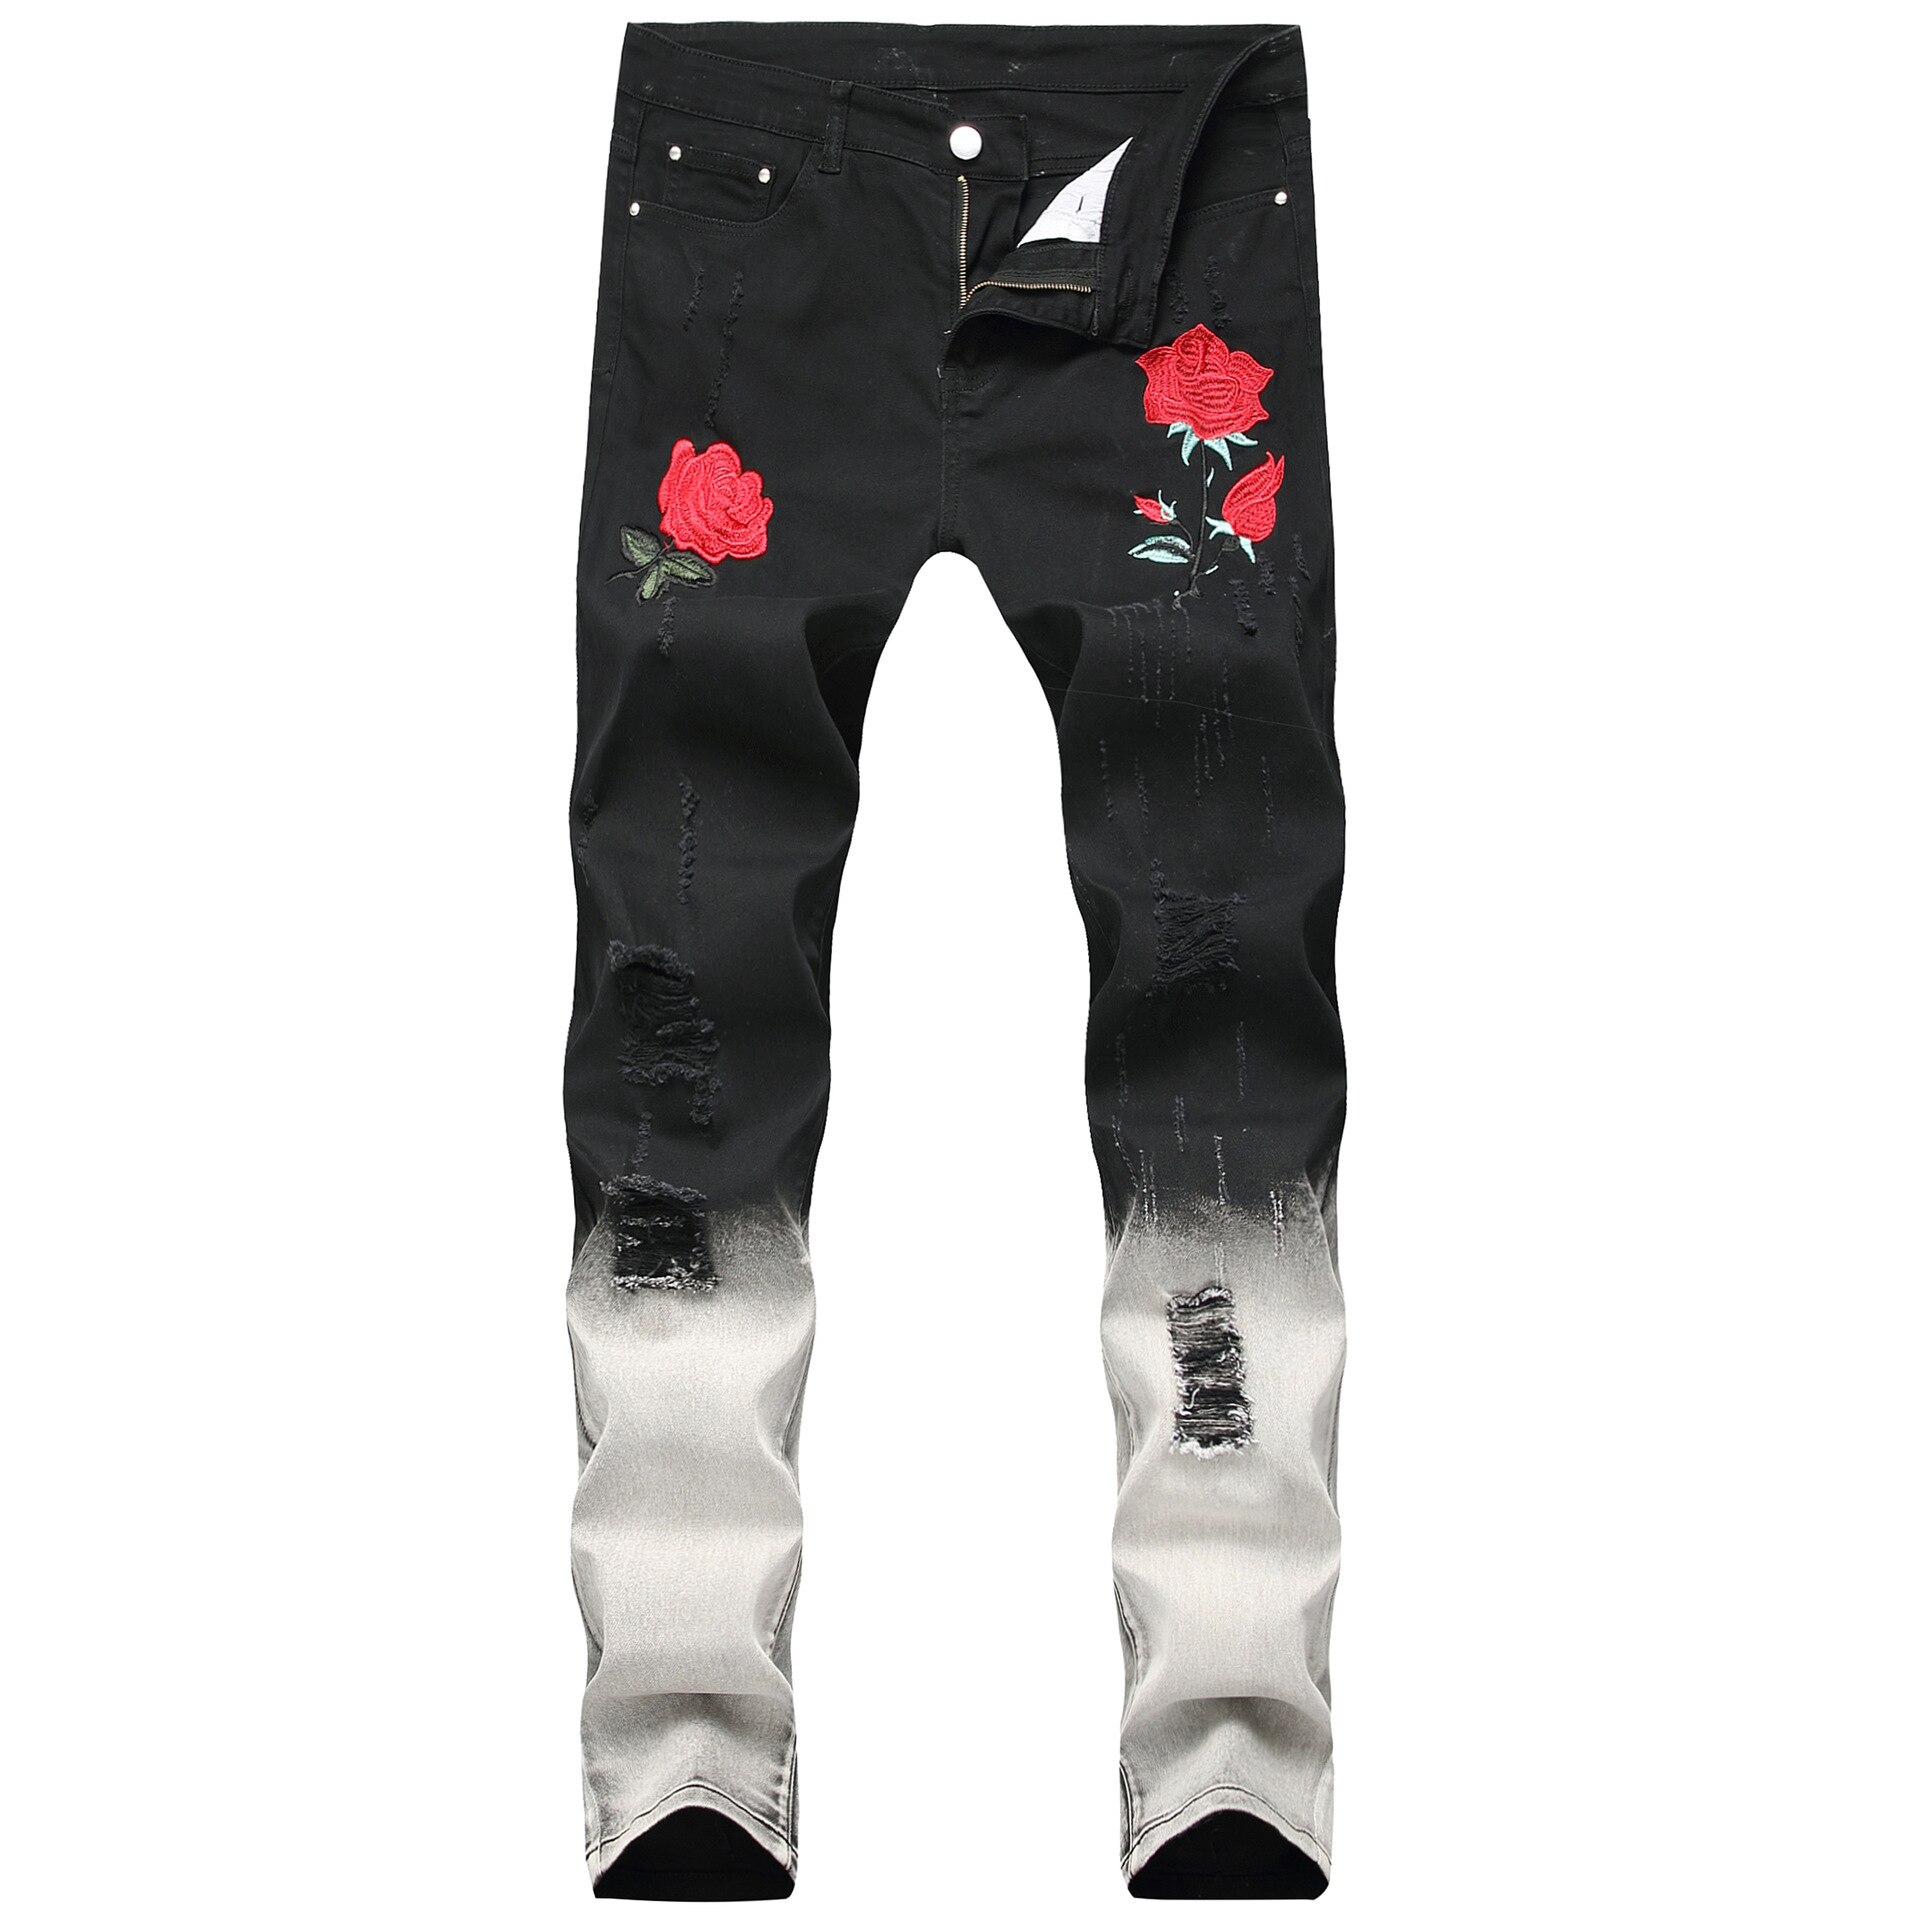 Sort hvid patchwork rippede mænd jeans broderi med blomster rose broderet mænds denim jeans stretch skinny slanke jean bukser: 38